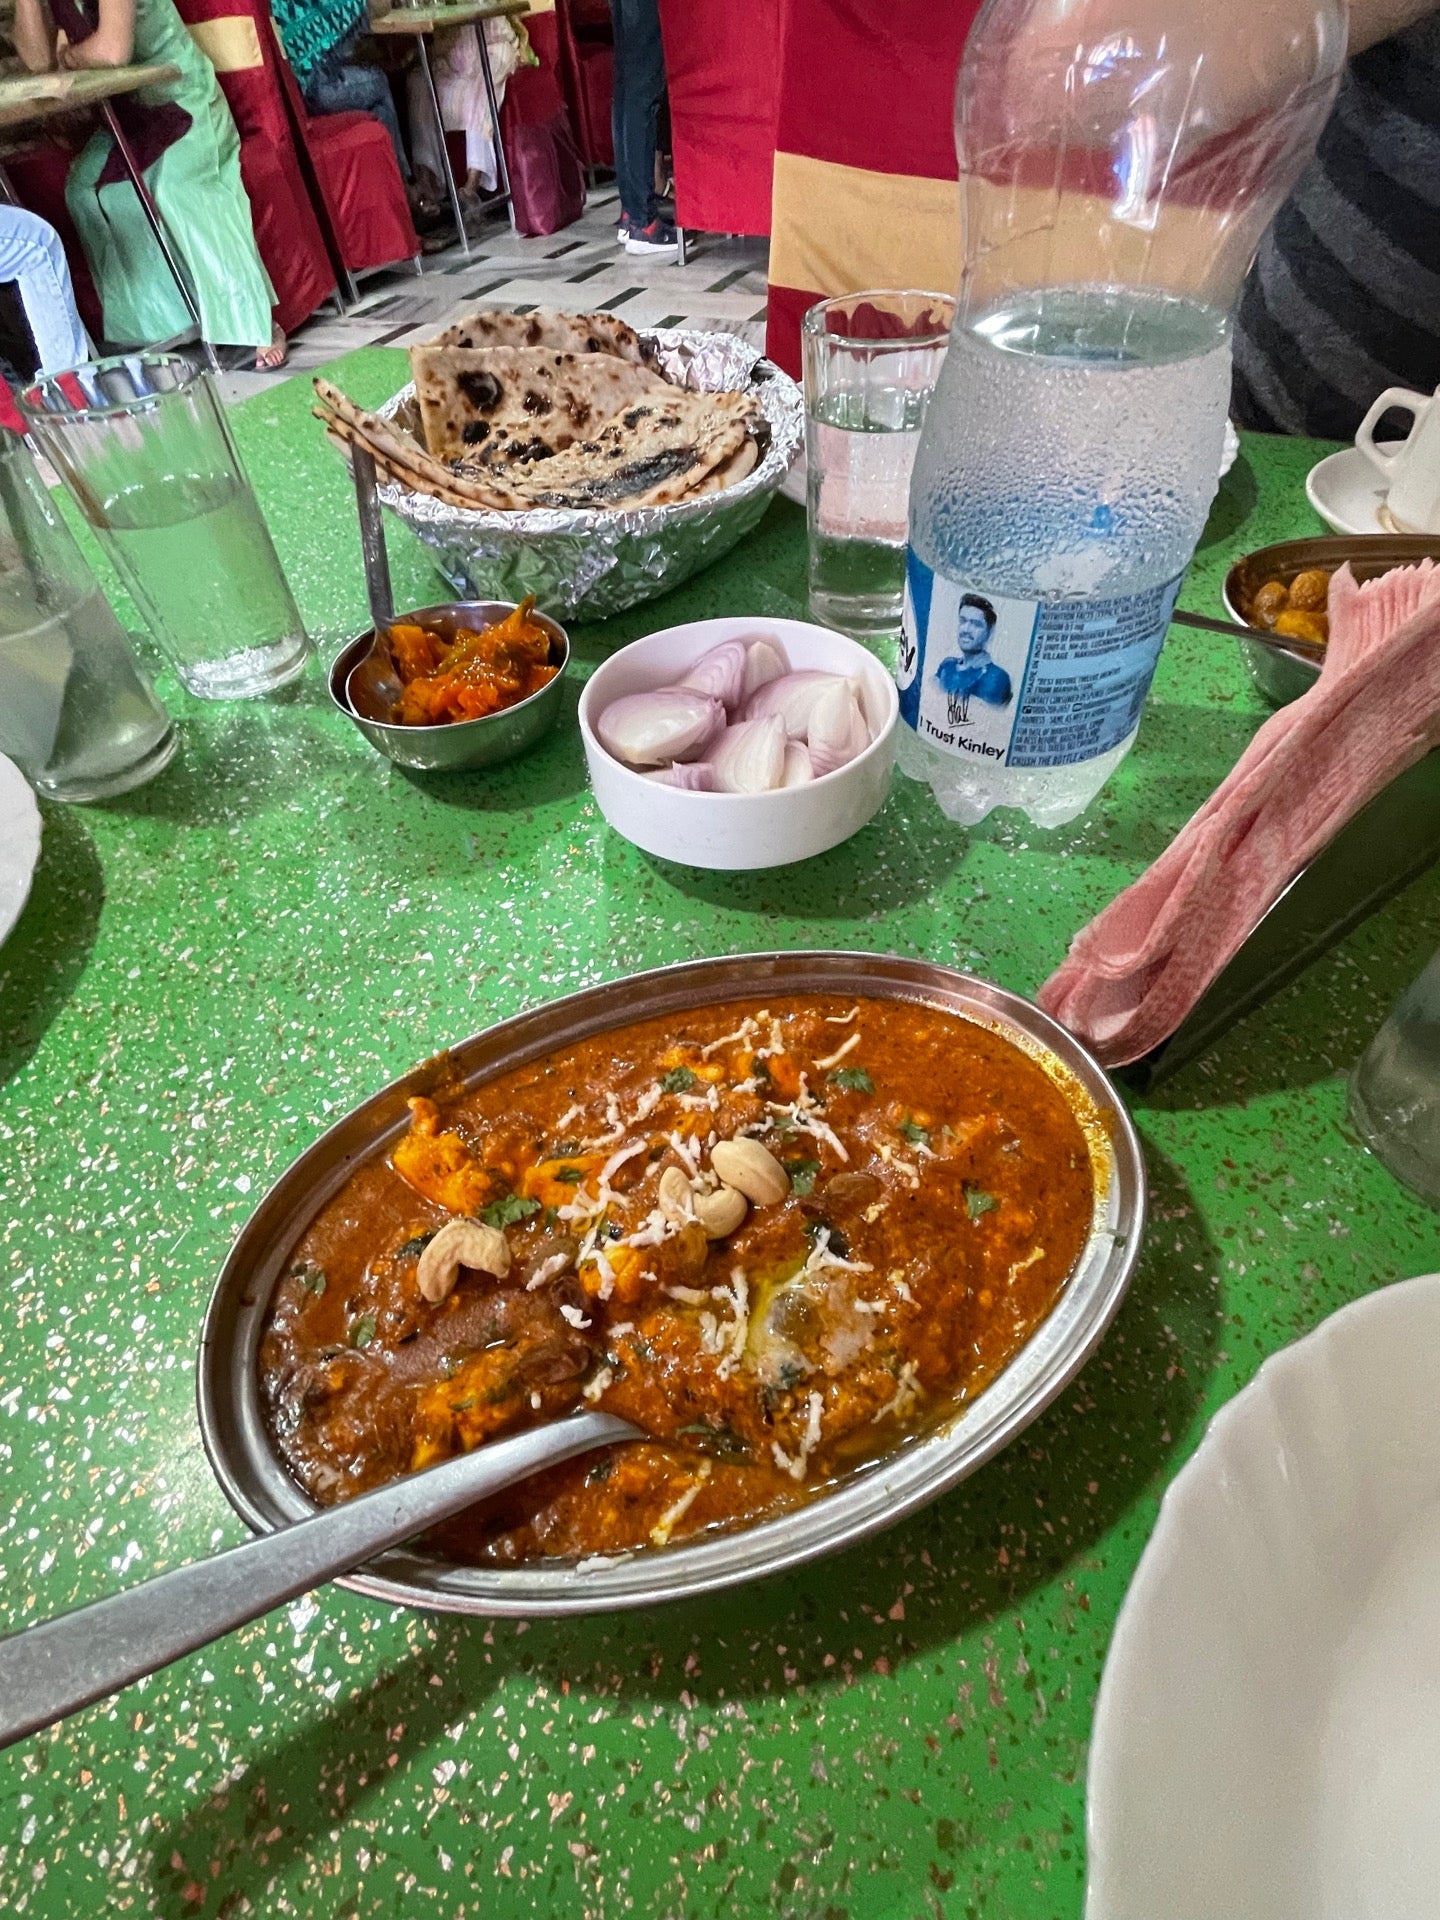 Vaishali Restaurant